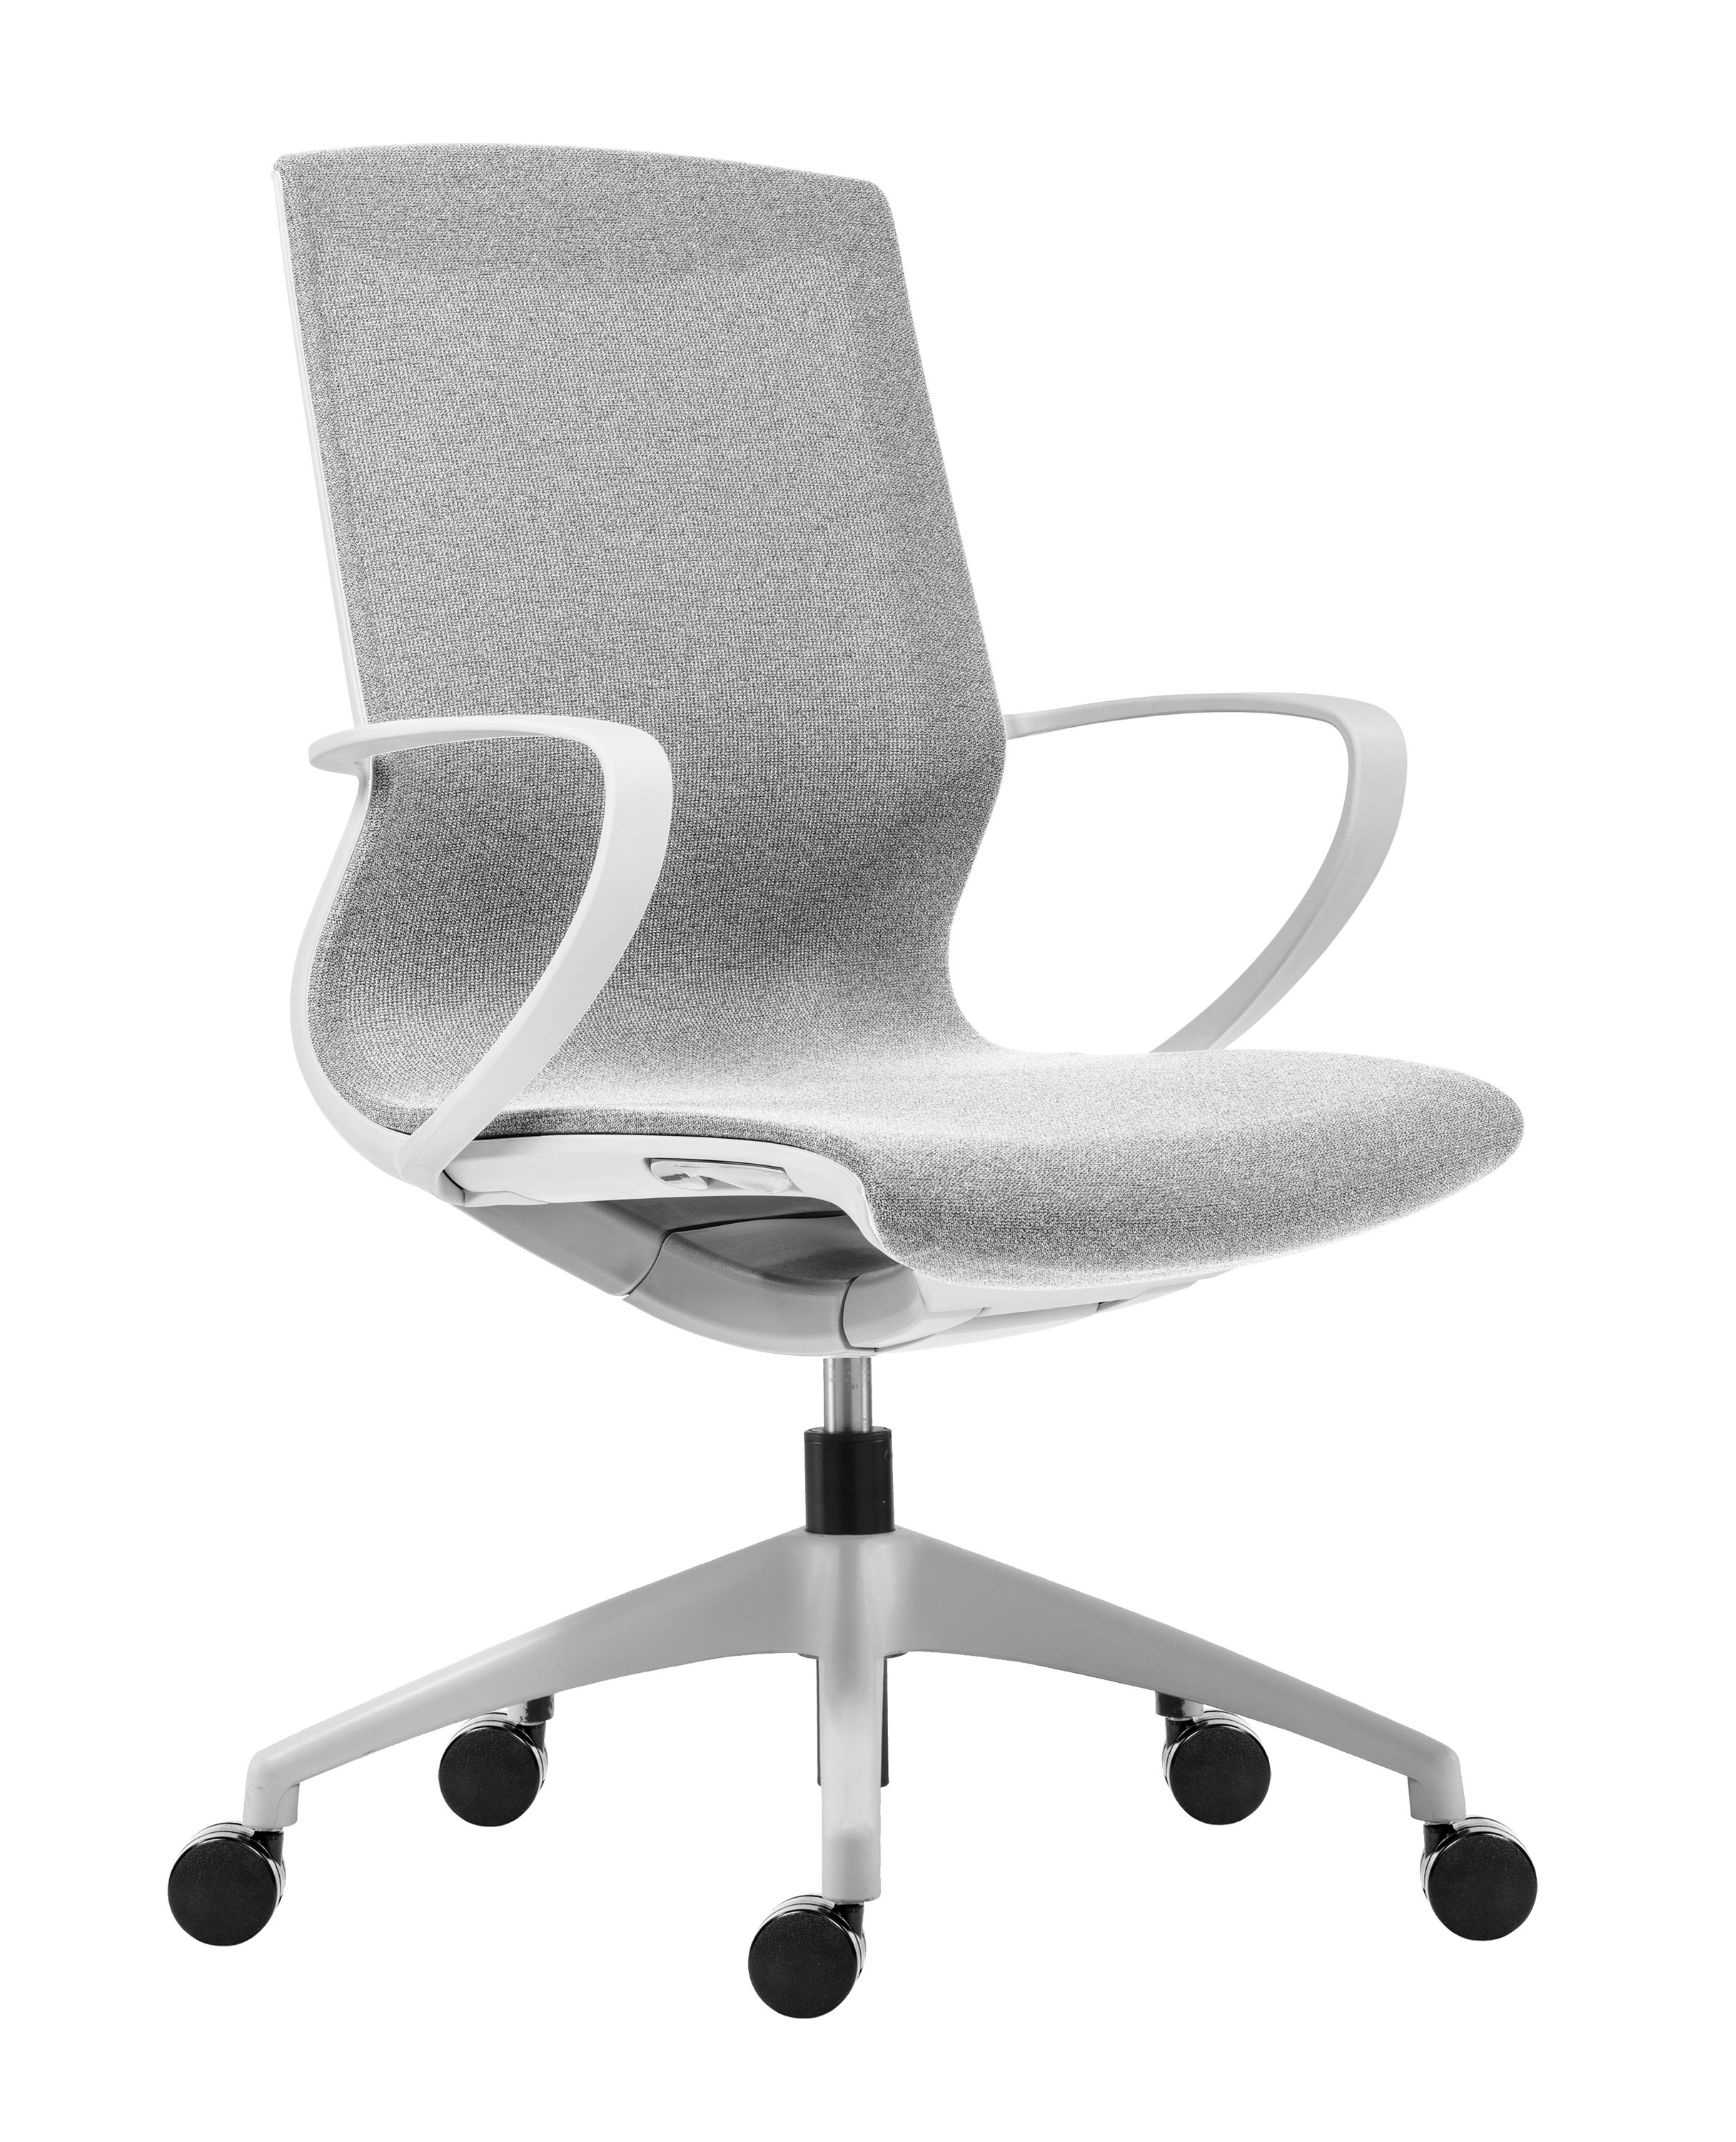 Kancelářská židle Vision bílá